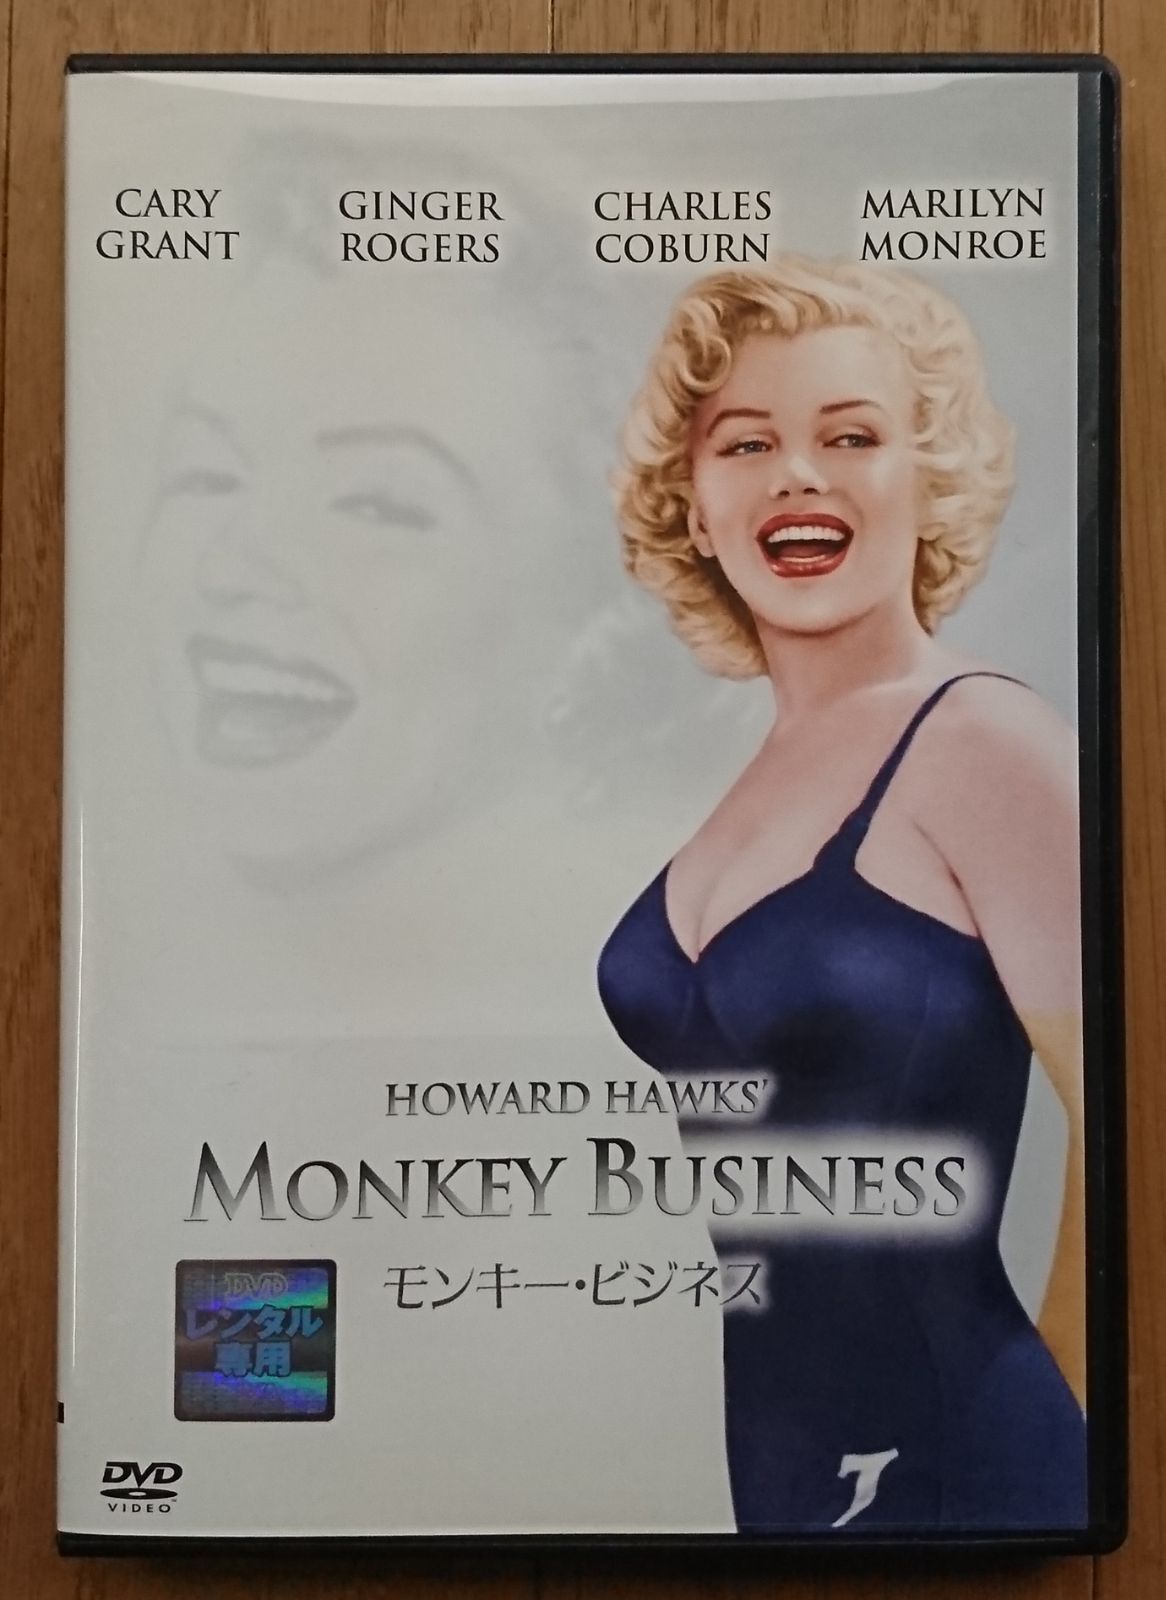 レンタル版DVD】モンキー・ビジネス 出演:ケイリー・グラント/マリリン・モンロー - メルカリ